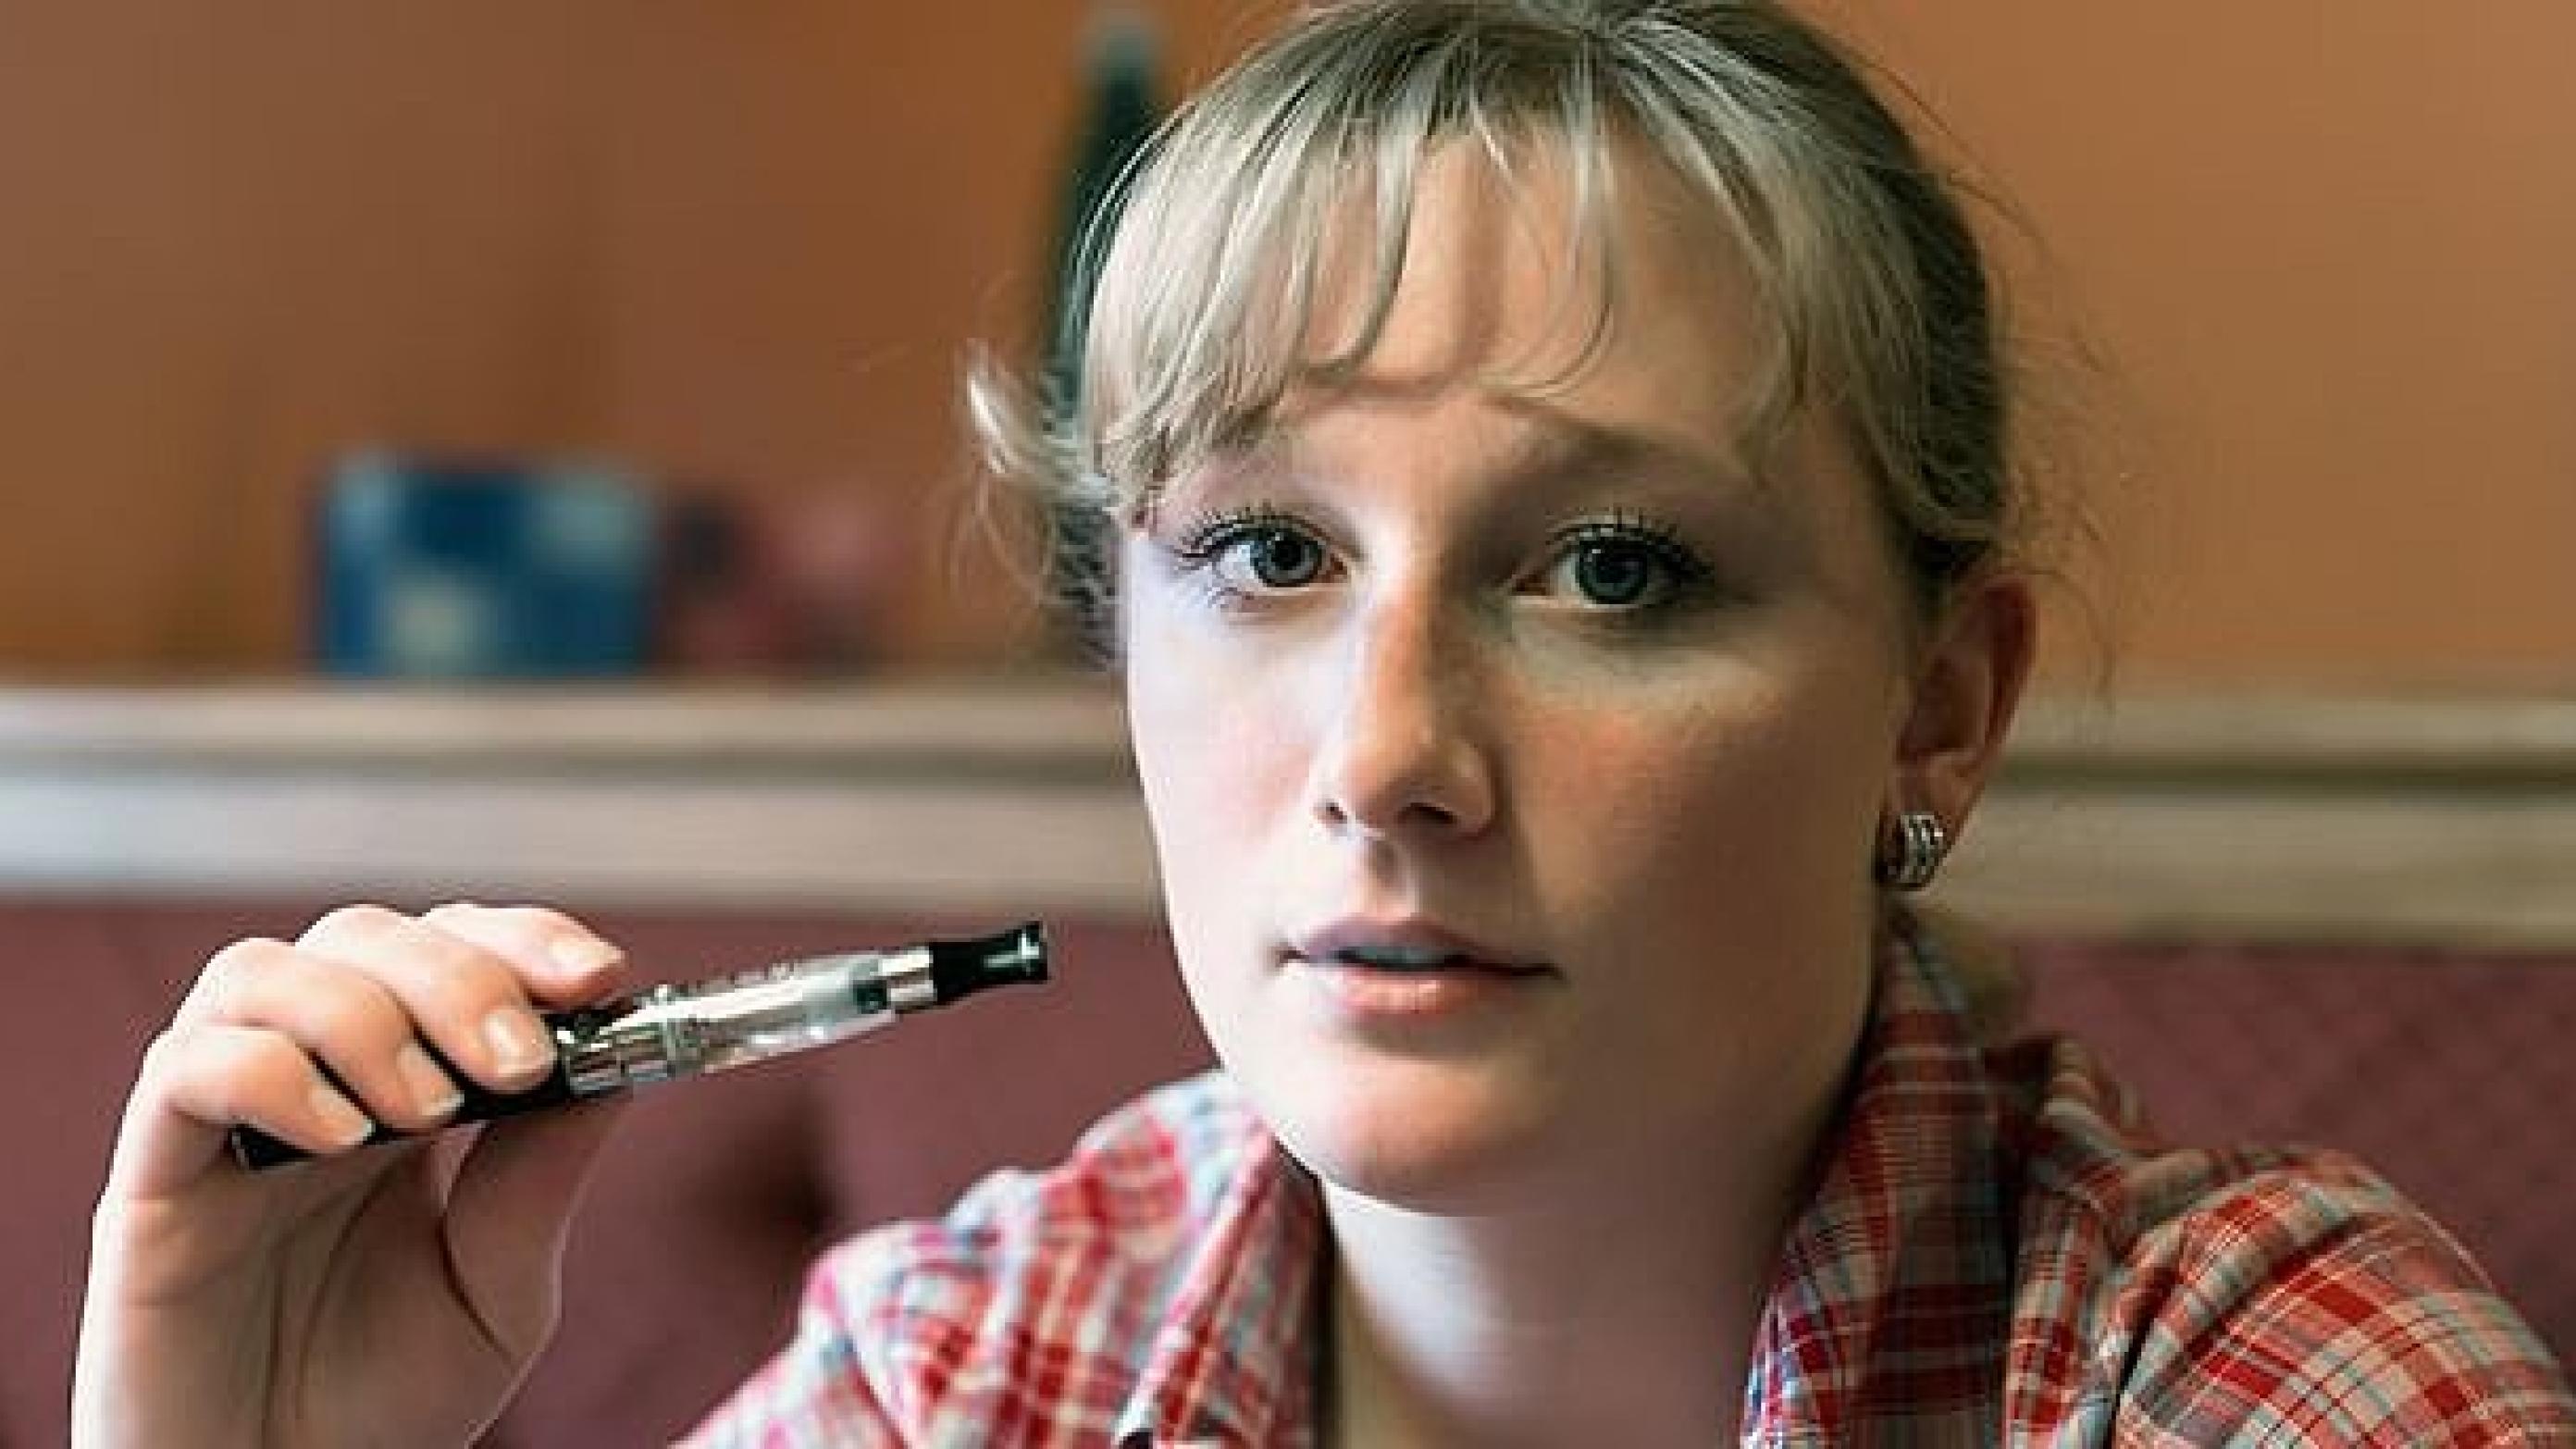 E-cigaretter skal lovmæssigt sidestilles med tobak, mener Lægeforeningen i et høringssvar. Foto: Colourbox